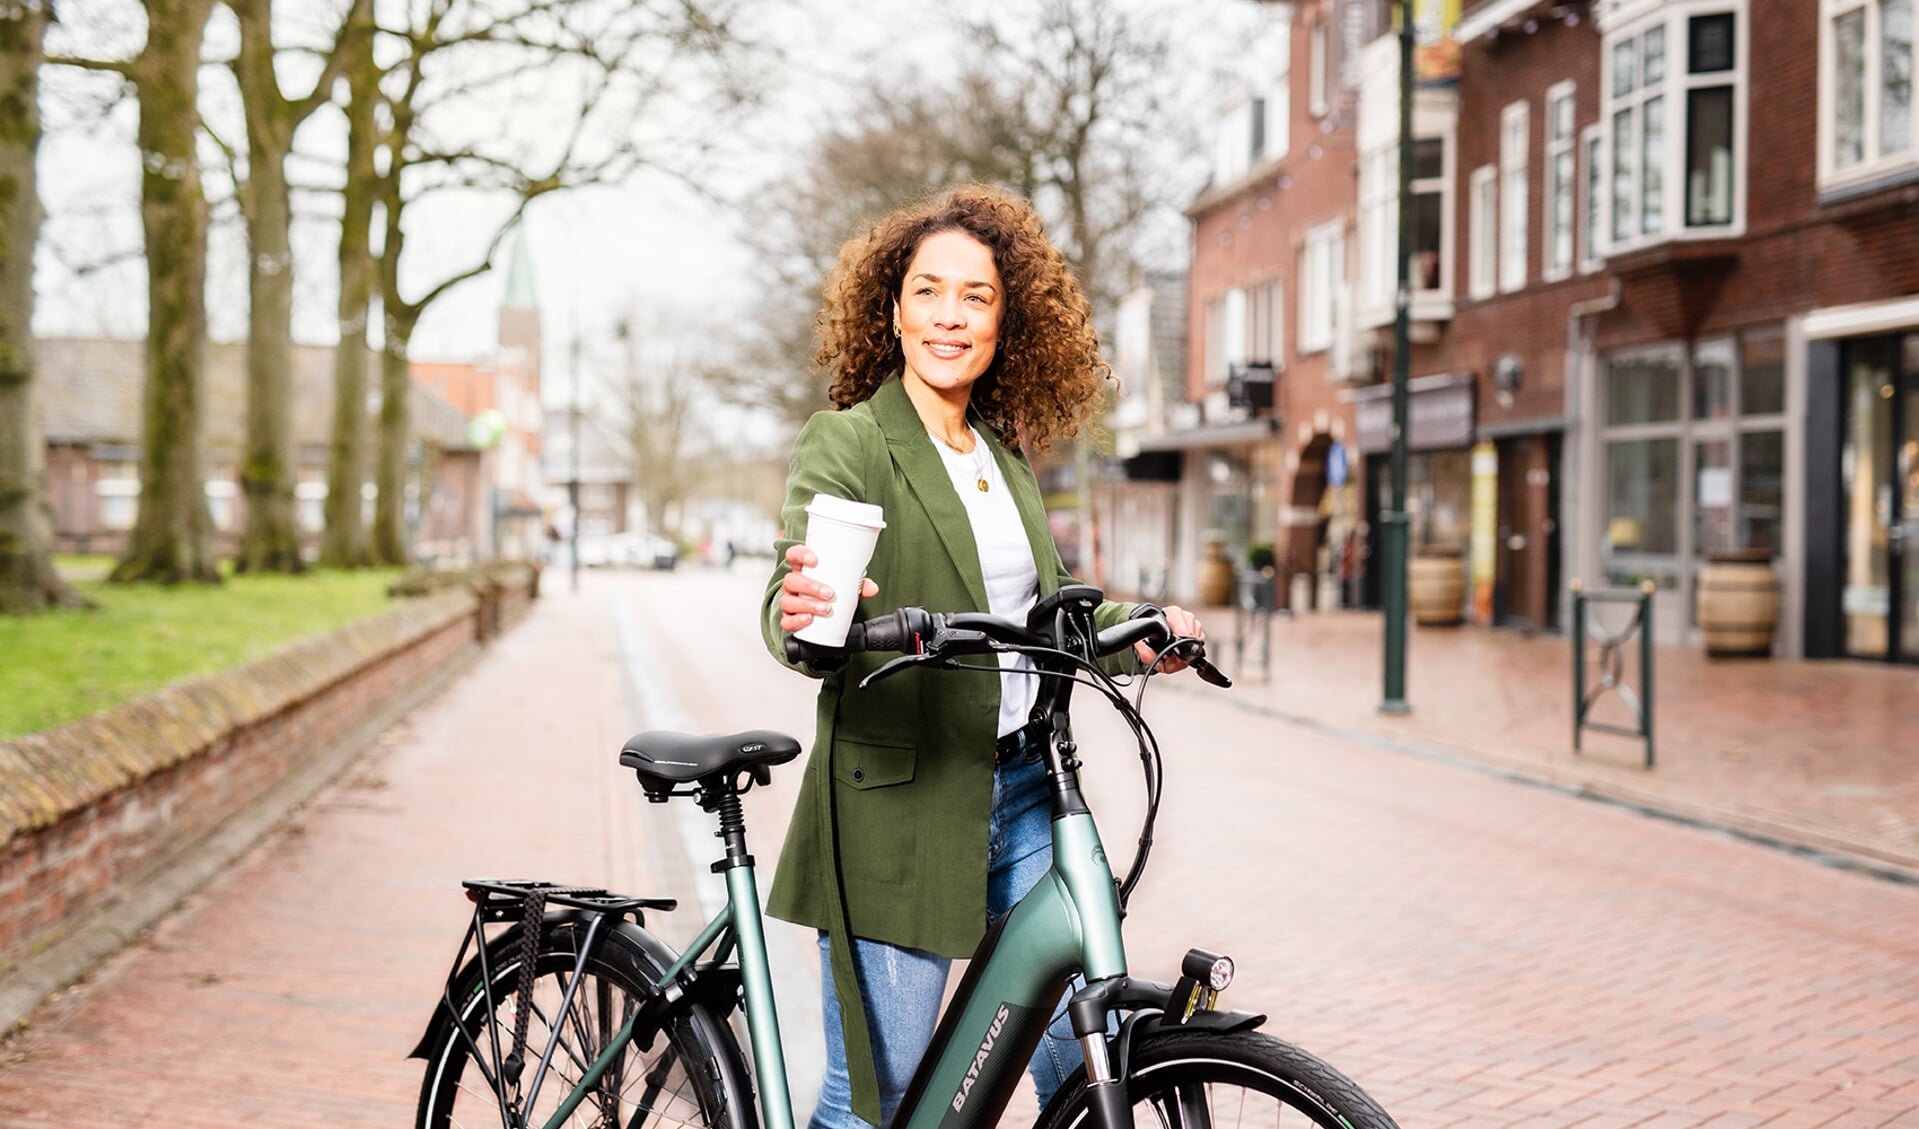 Groningen Bereikbaar roept iedereen op om tijdens de thuiswerkdag de elektrische fiets eens te proberen voor een kleine boodschap of een blokje om. (foto David Vroom)